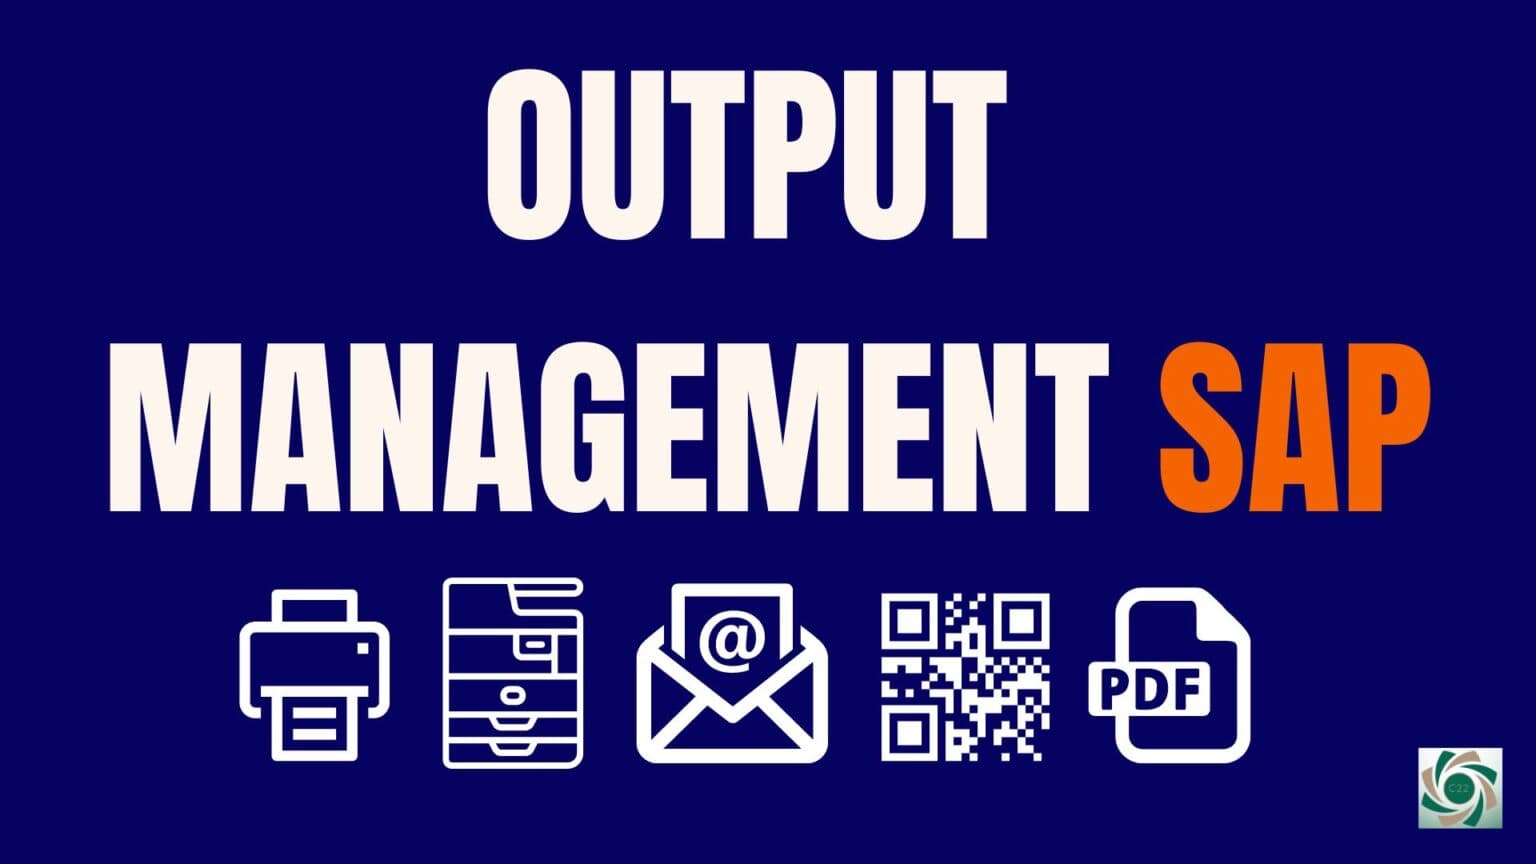 Affiche avec le titre "Output Management SAP".